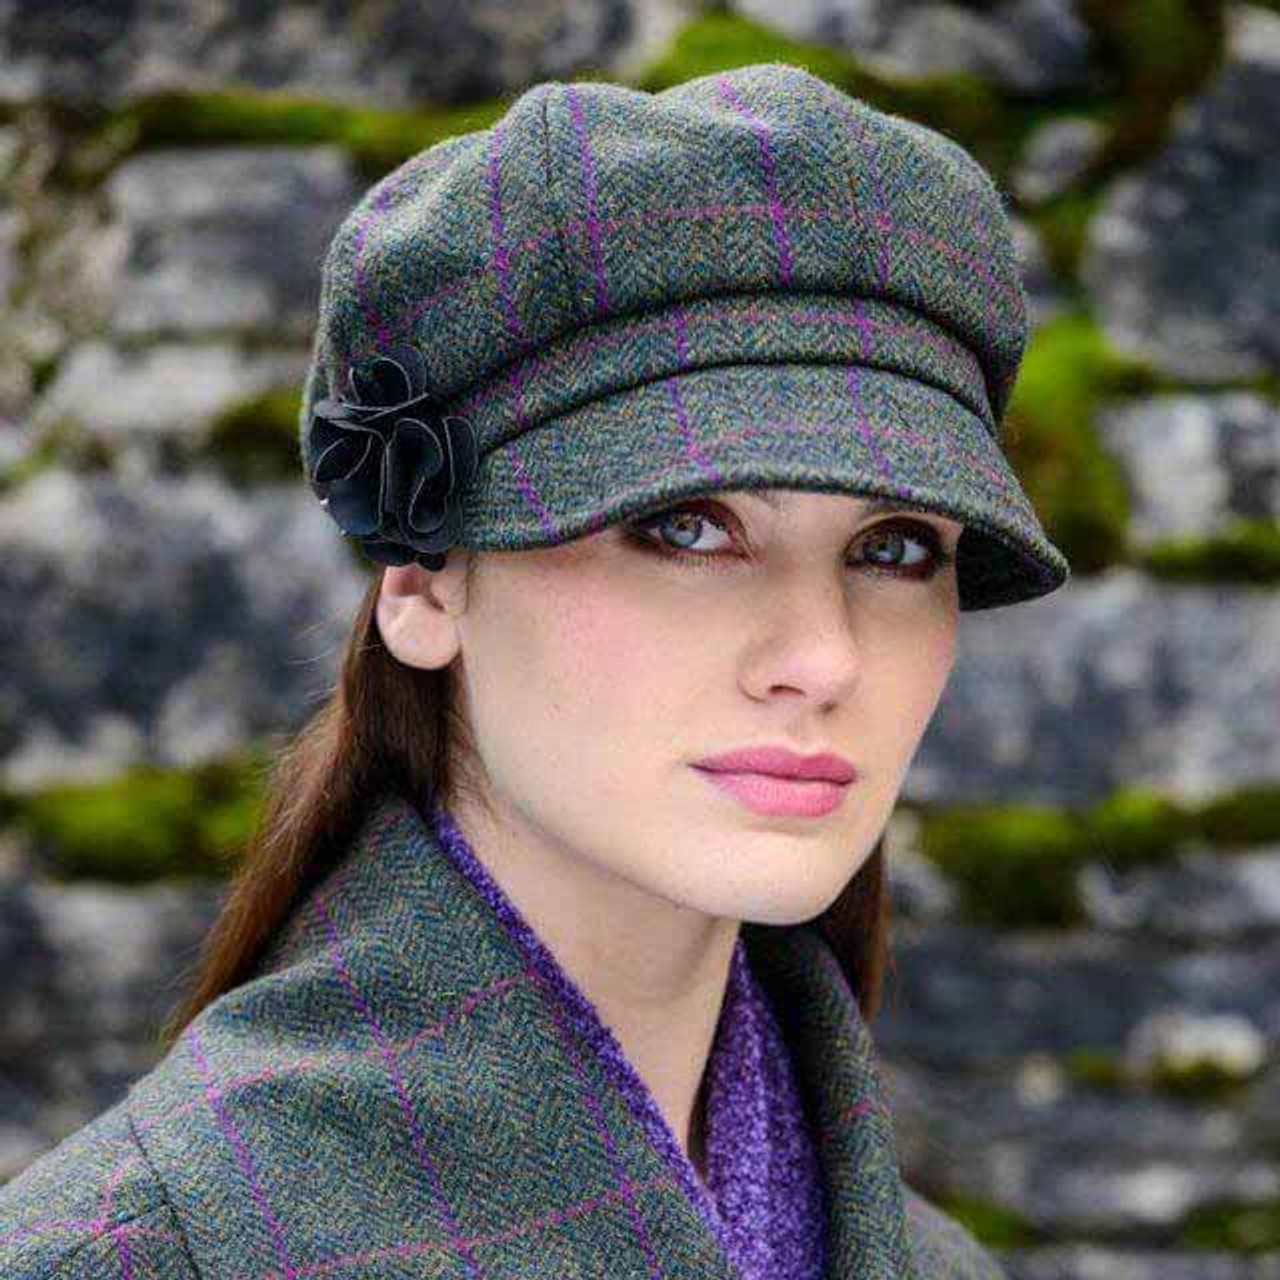 Irish Linen Caps From The Weavers Of Ireland